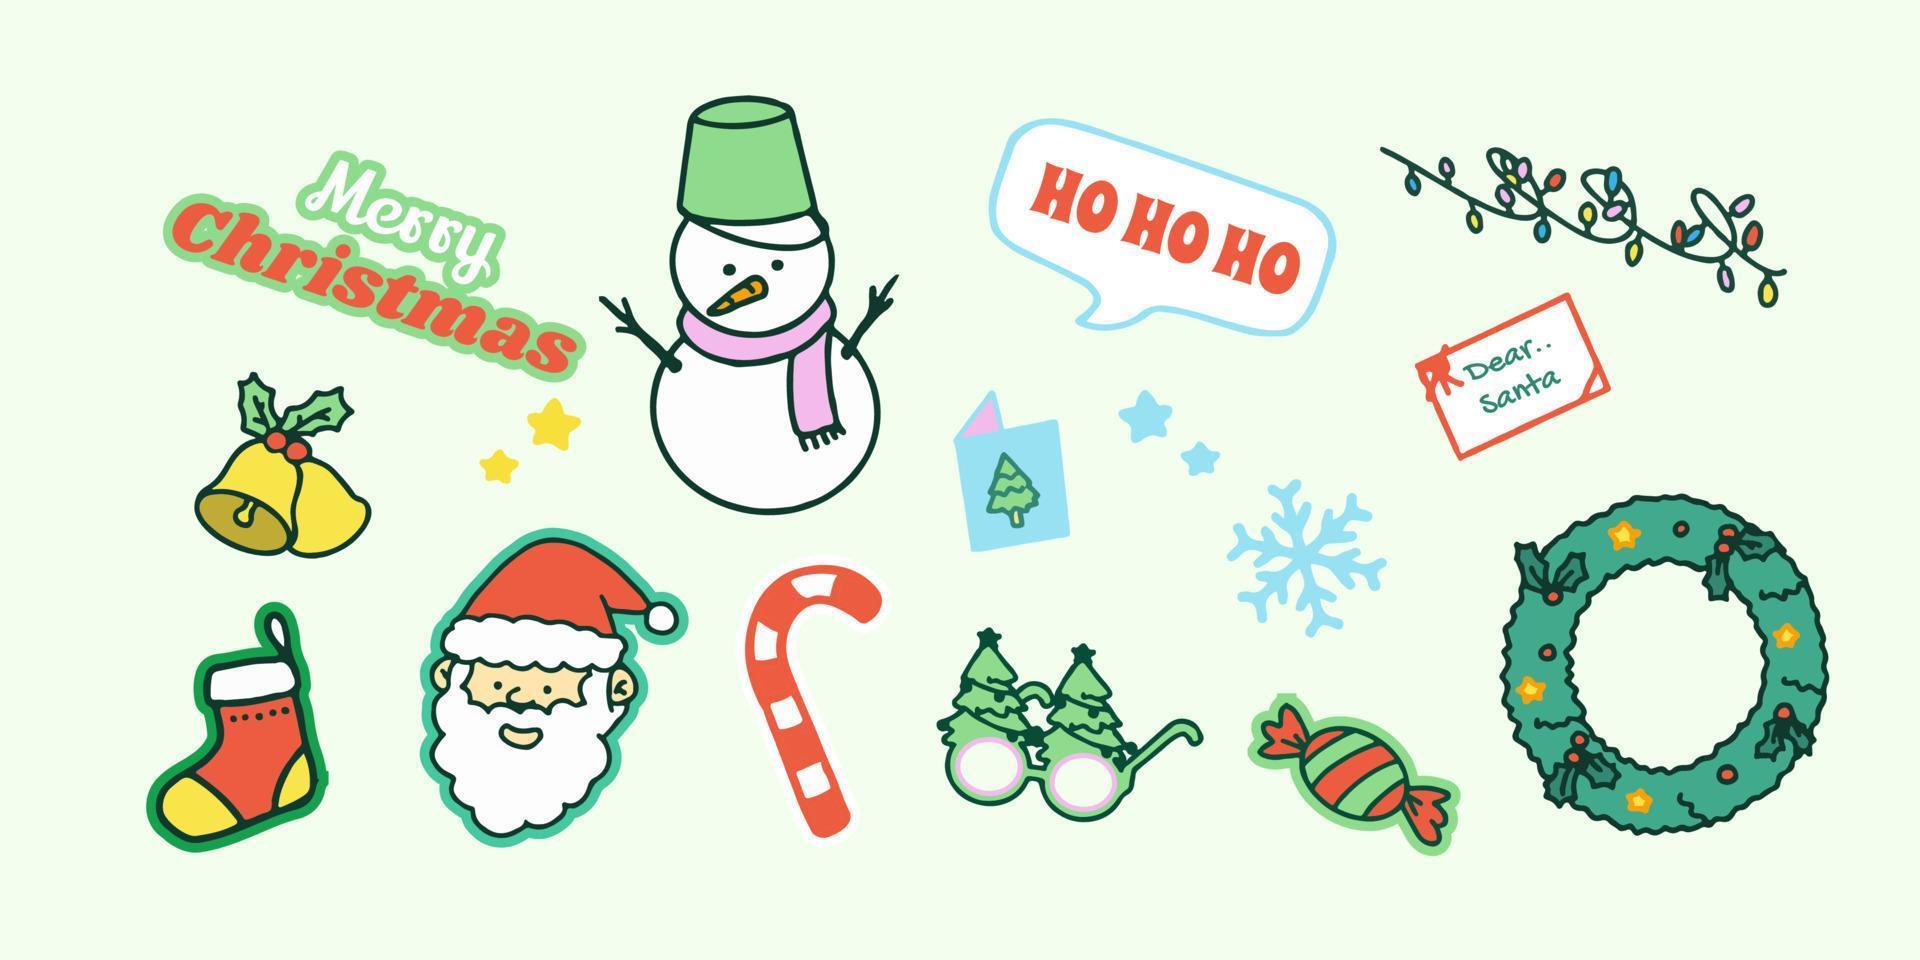 colección de adornos navideños, regalos navideños, ropa de lana de punto de invierno, pan de jengibre, árboles, regalos y pingüinos. ilustración de vector colorido en estilo de dibujos animados plana